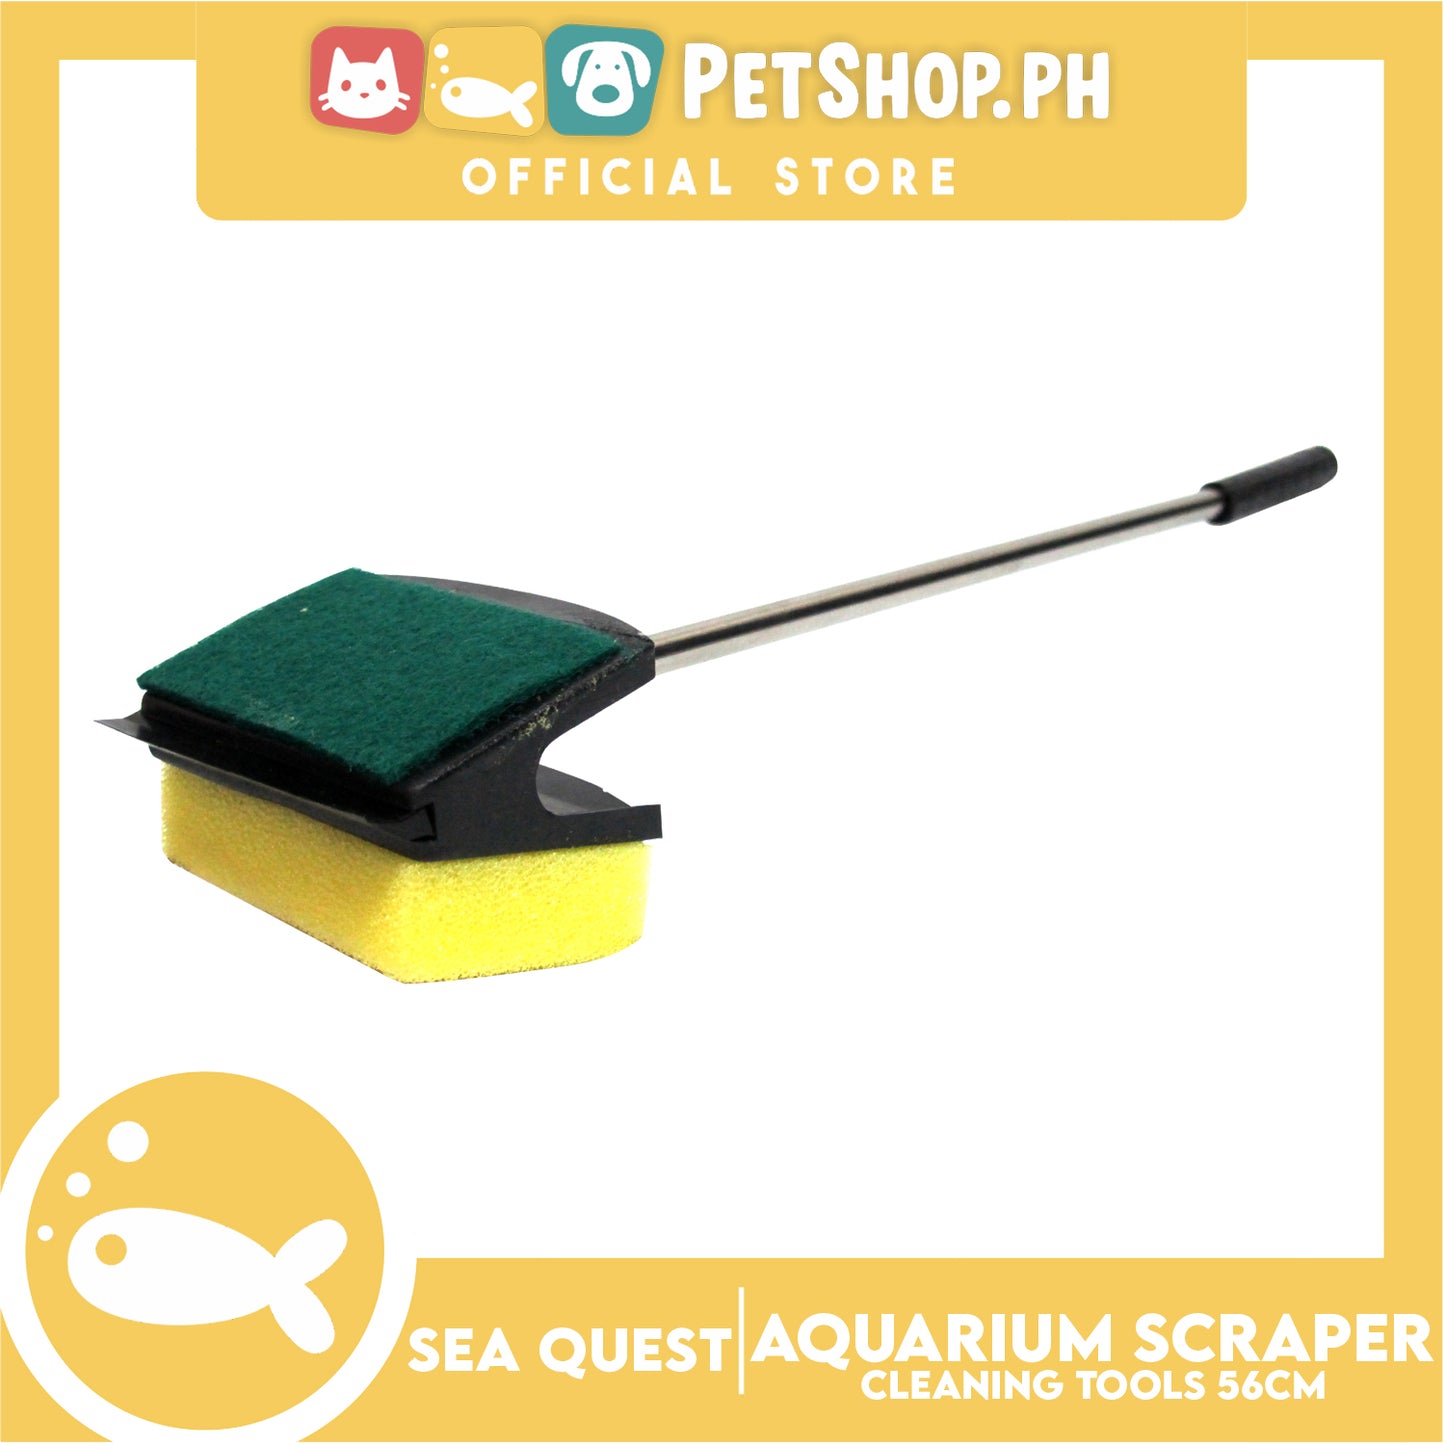 Sea Quest Aquarium Scraper 56cm